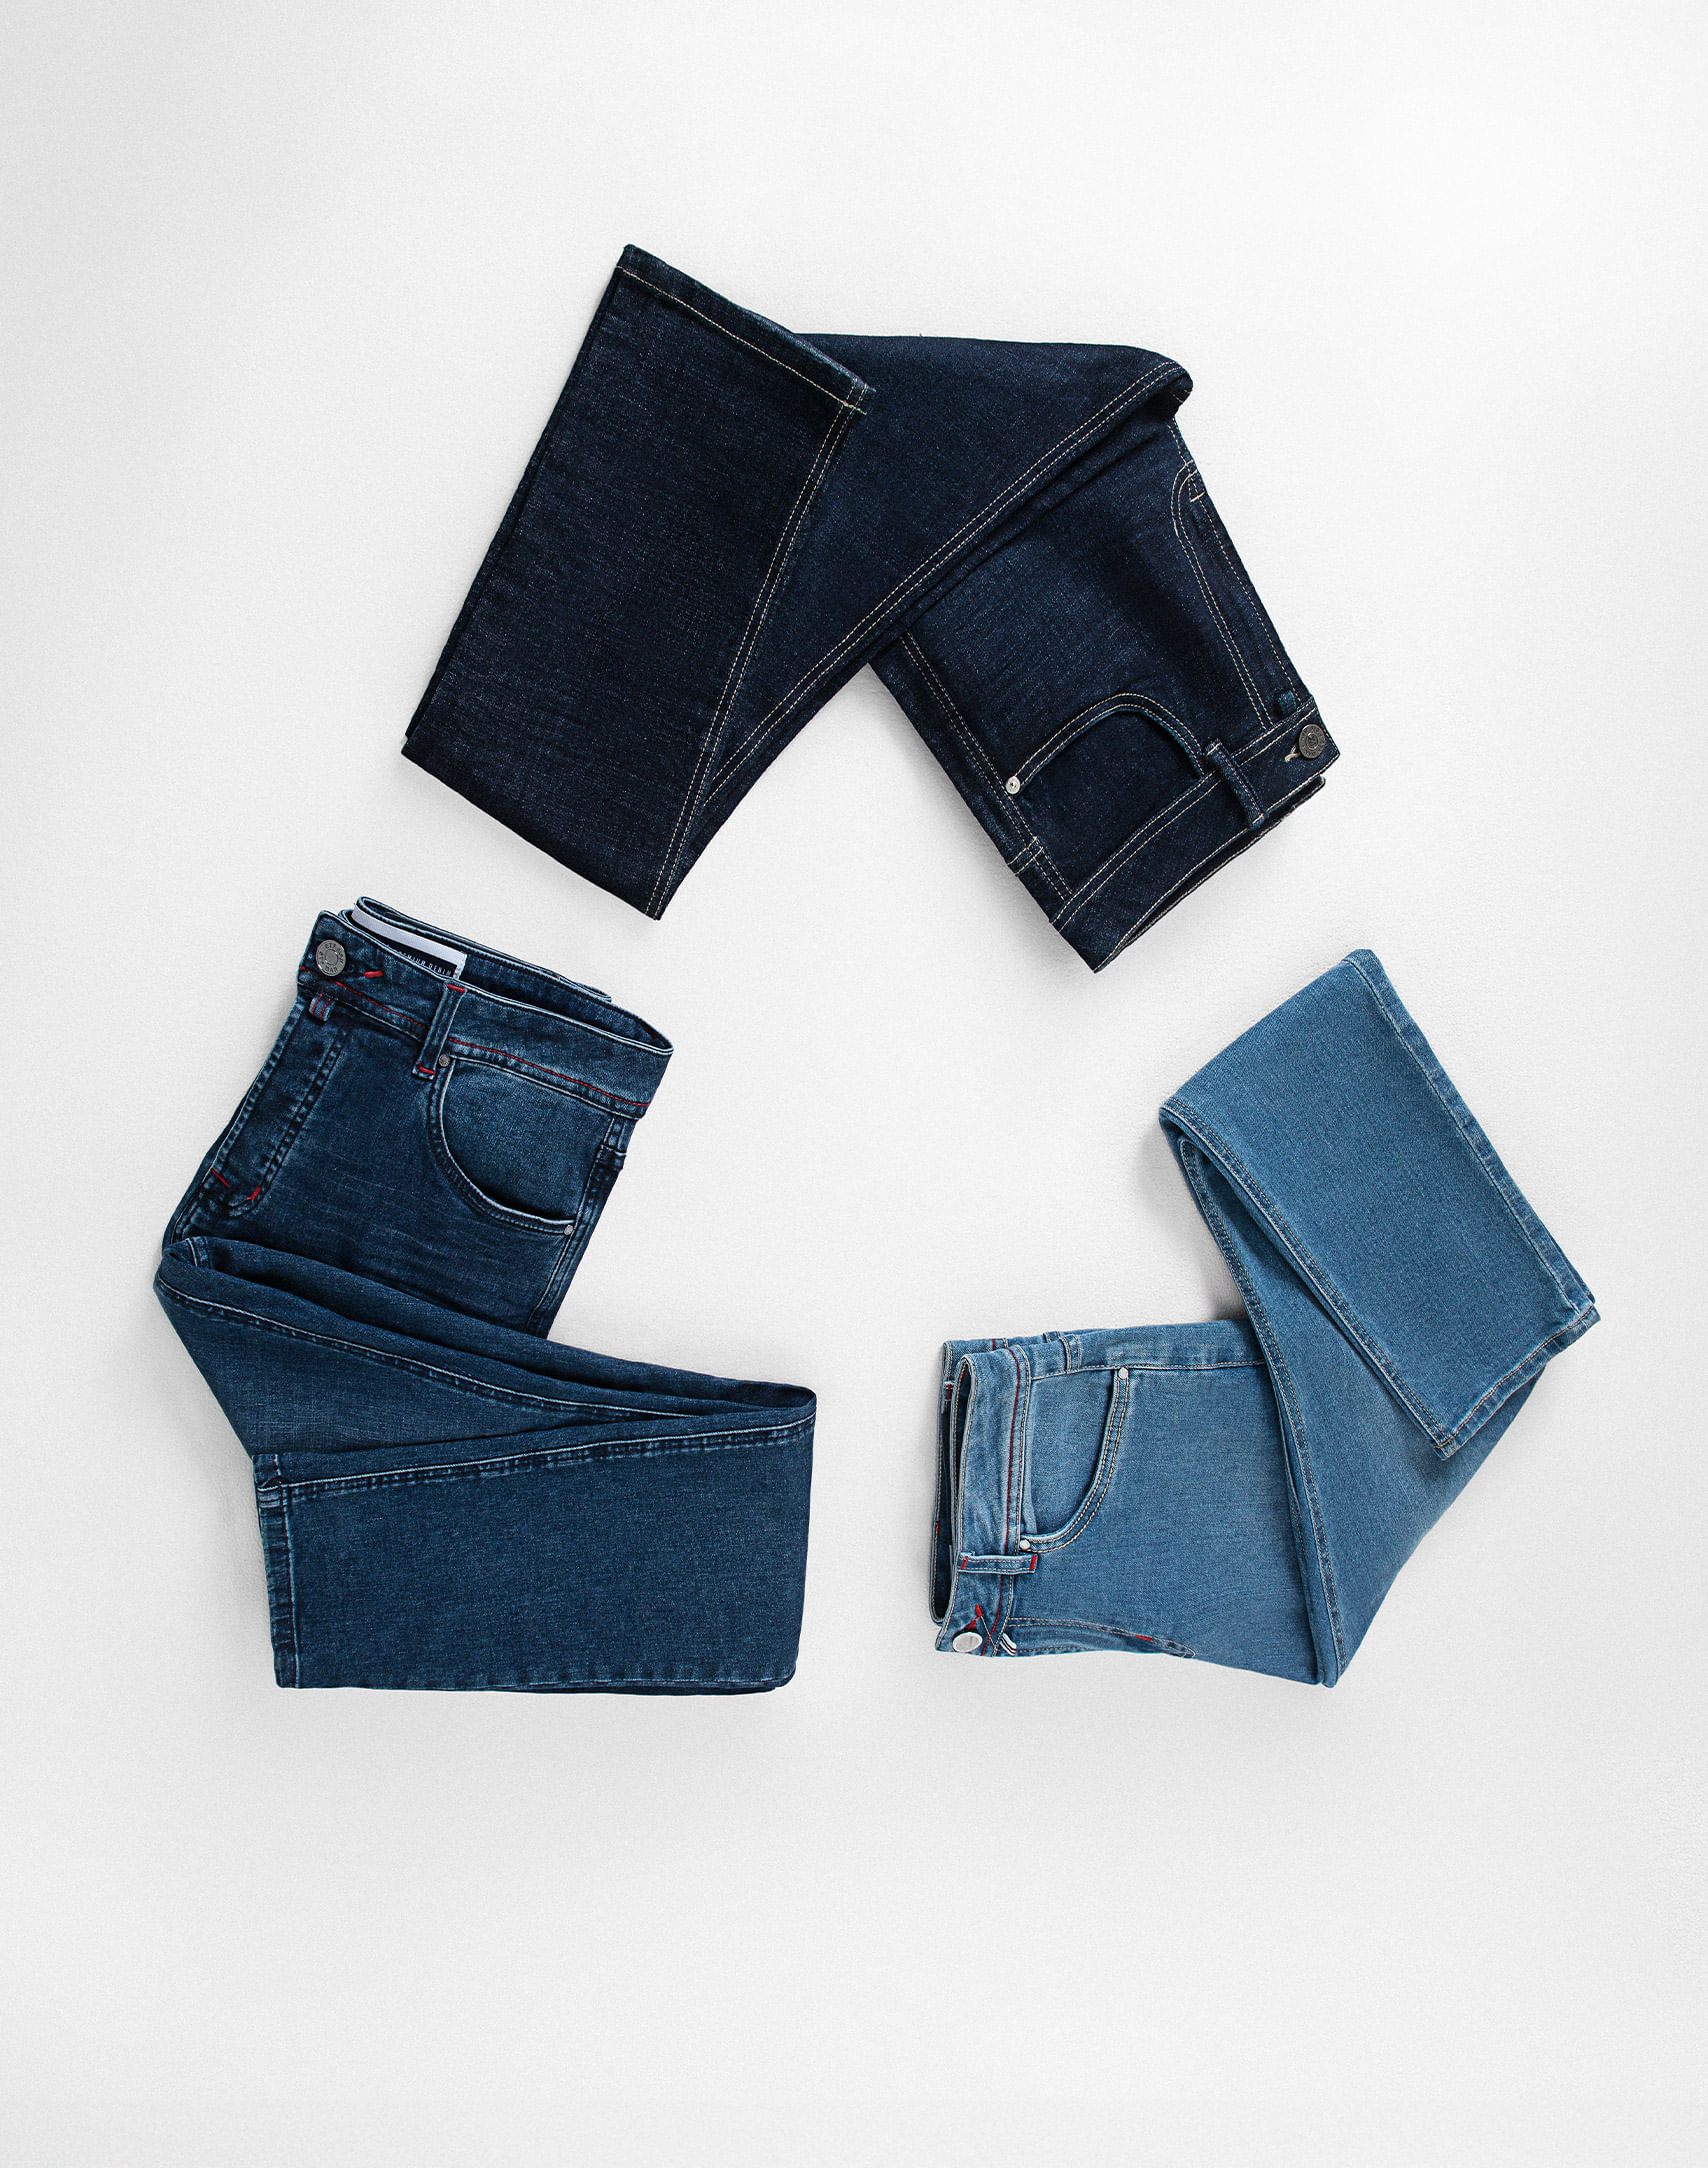 Foto de 3 jeans en tonos oscuro, claro y medio formando un triangulo